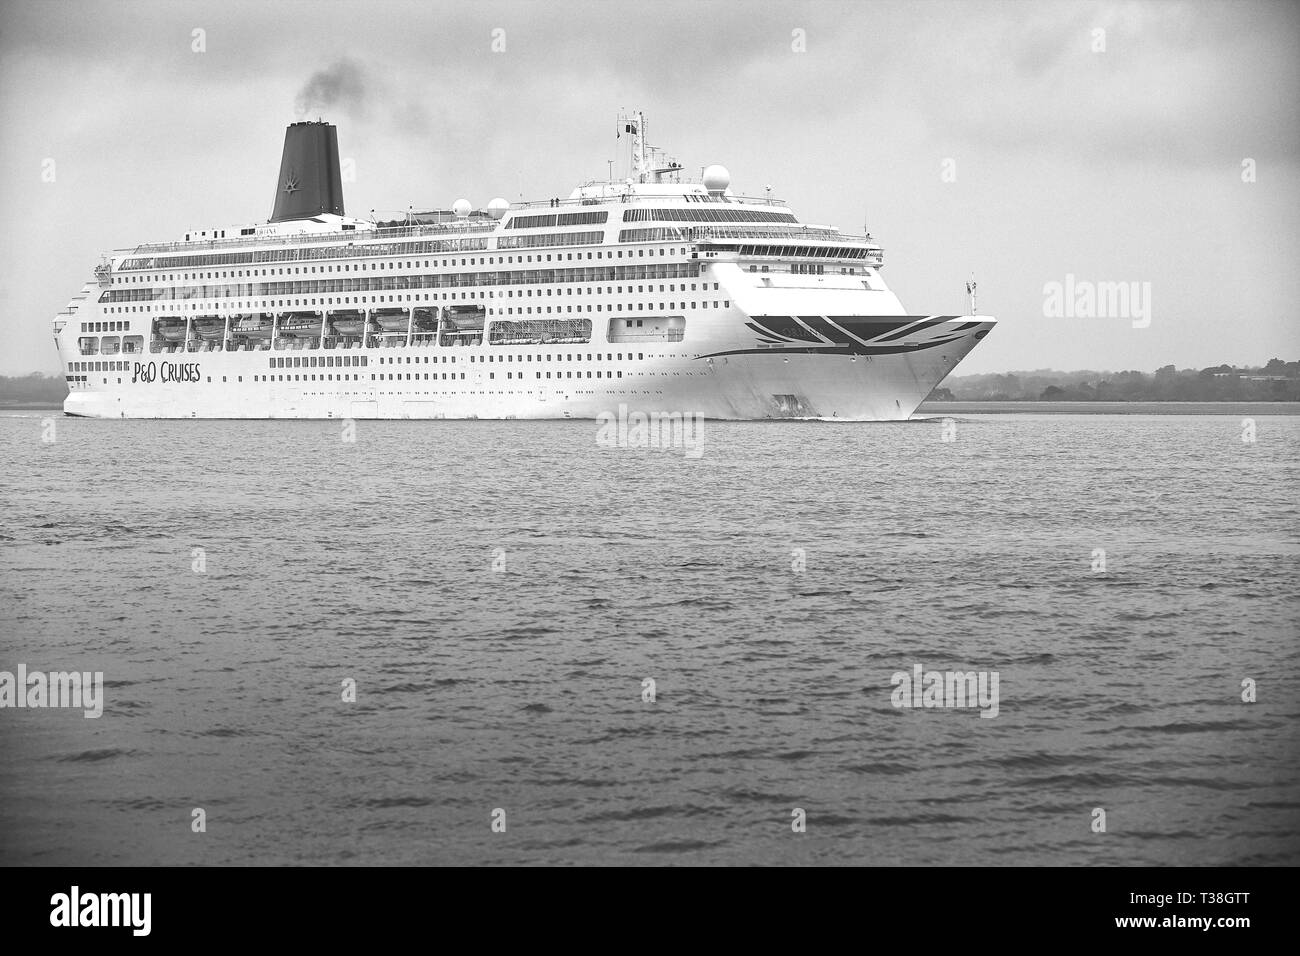 Foto in bianco e nero di P & O Cruises, una gigantesca nave da crociera, Oriana, In corso In Southampton acqua, con partenza dal Porto di Southampton, Regno Unito. Marzo 2019. Foto Stock